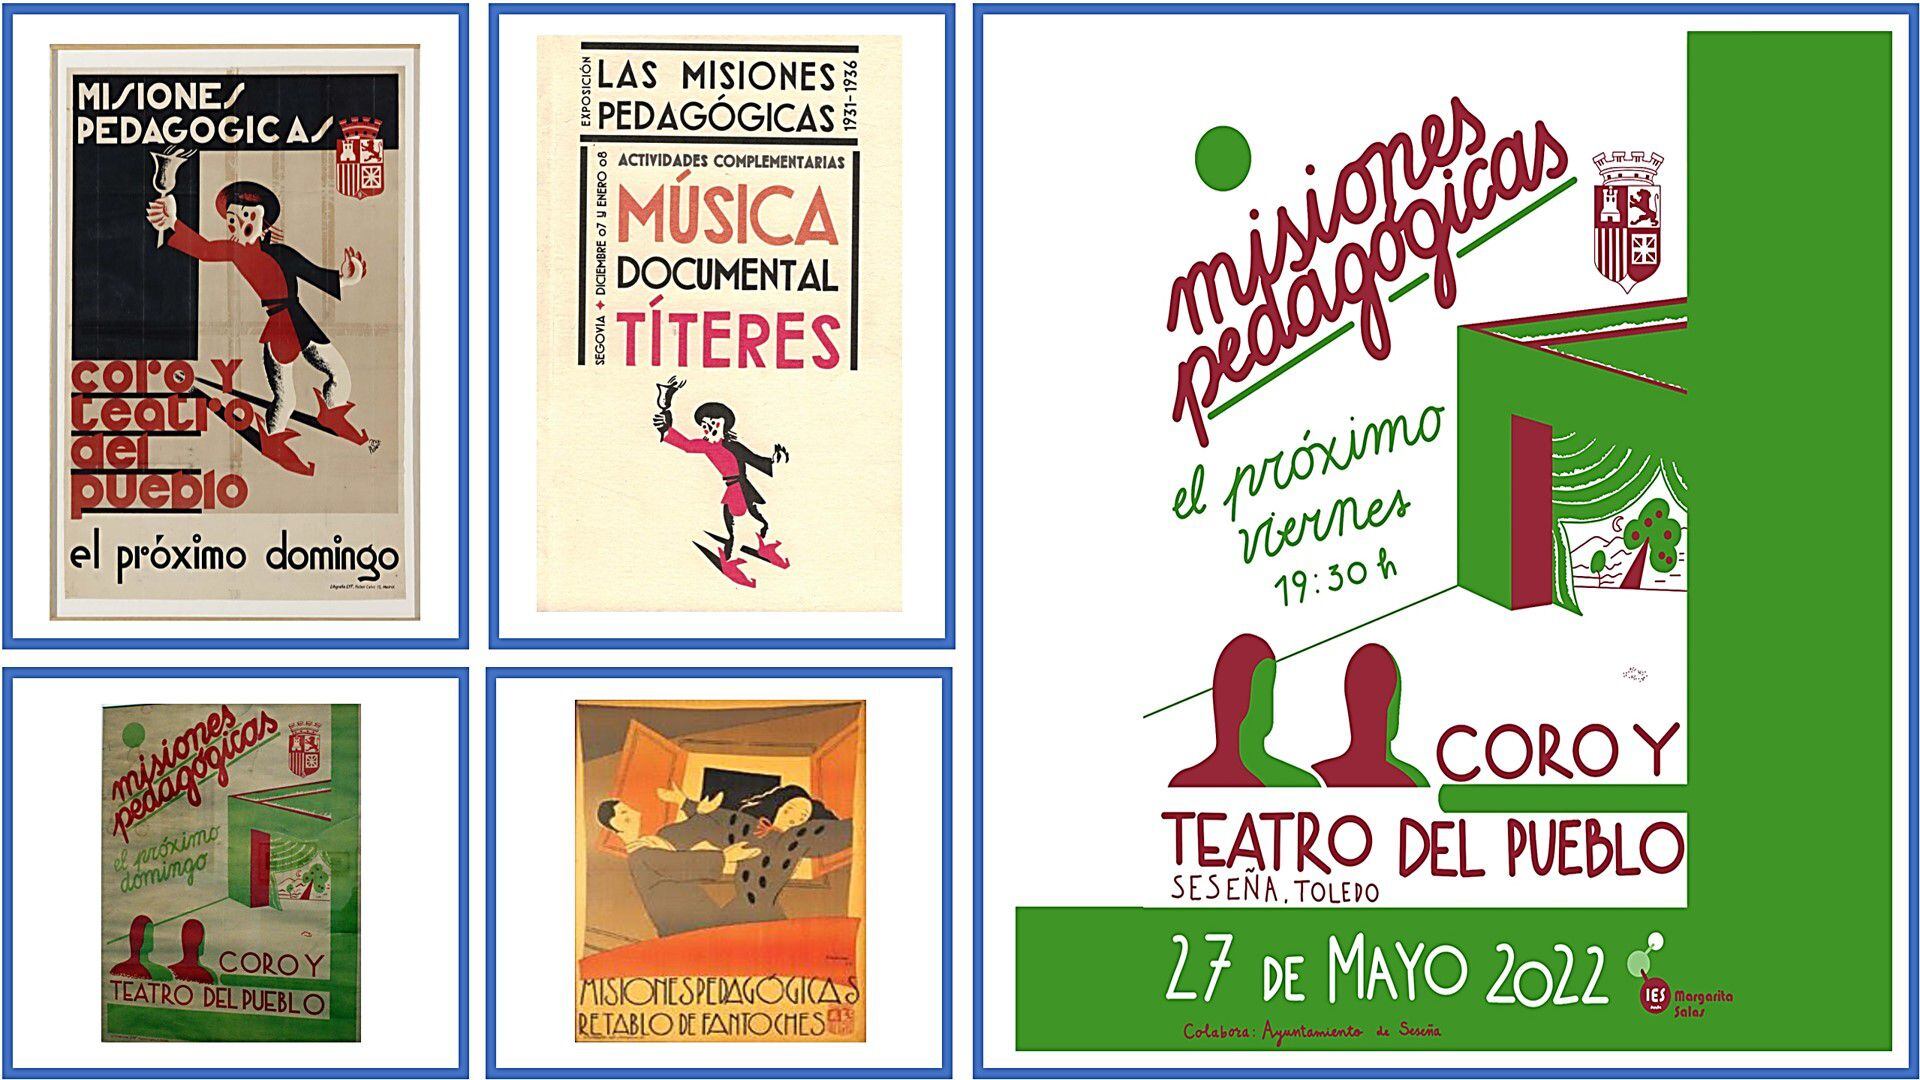 Carteles anunciadores de las visitas de las Misiones pedagógicas a distintas localidades y cartel anunciador del evento de recreación de la visita a Seseña, el 27 de mayo de 2023.  